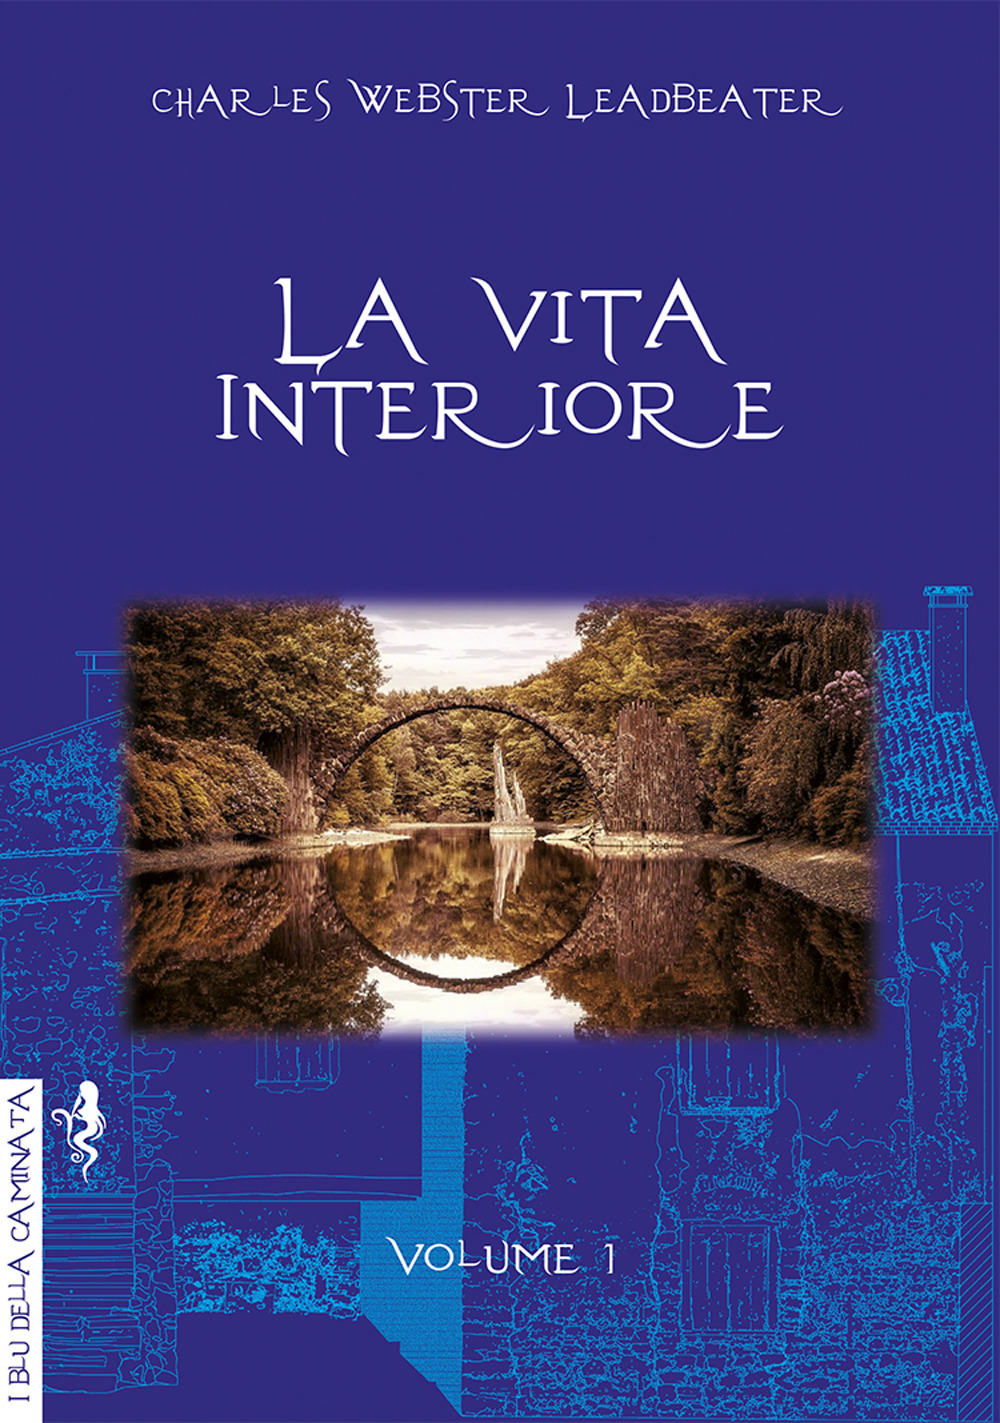 Libri Charles Webster Leadbeater - La Vita Interiore Volume 1 NUOVO SIGILLATO, EDIZIONE DEL 19/01/2022 SUBITO DISPONIBILE